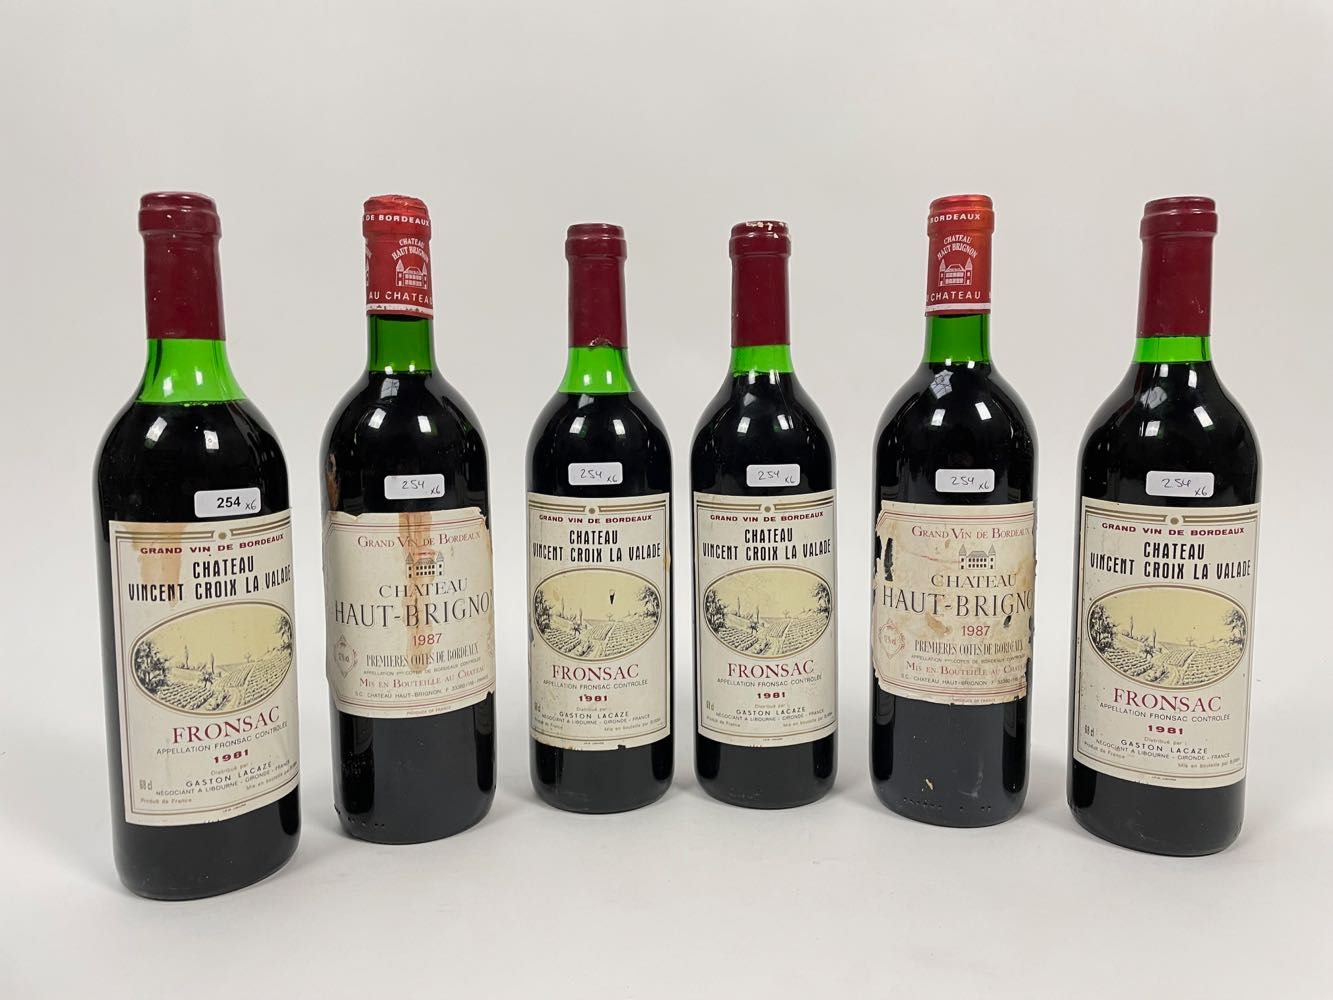 BORDEAUX Lot de six bouteilles (rouge) :
- (FRONSAC), Château Vincent-Croix-la-V&hellip;